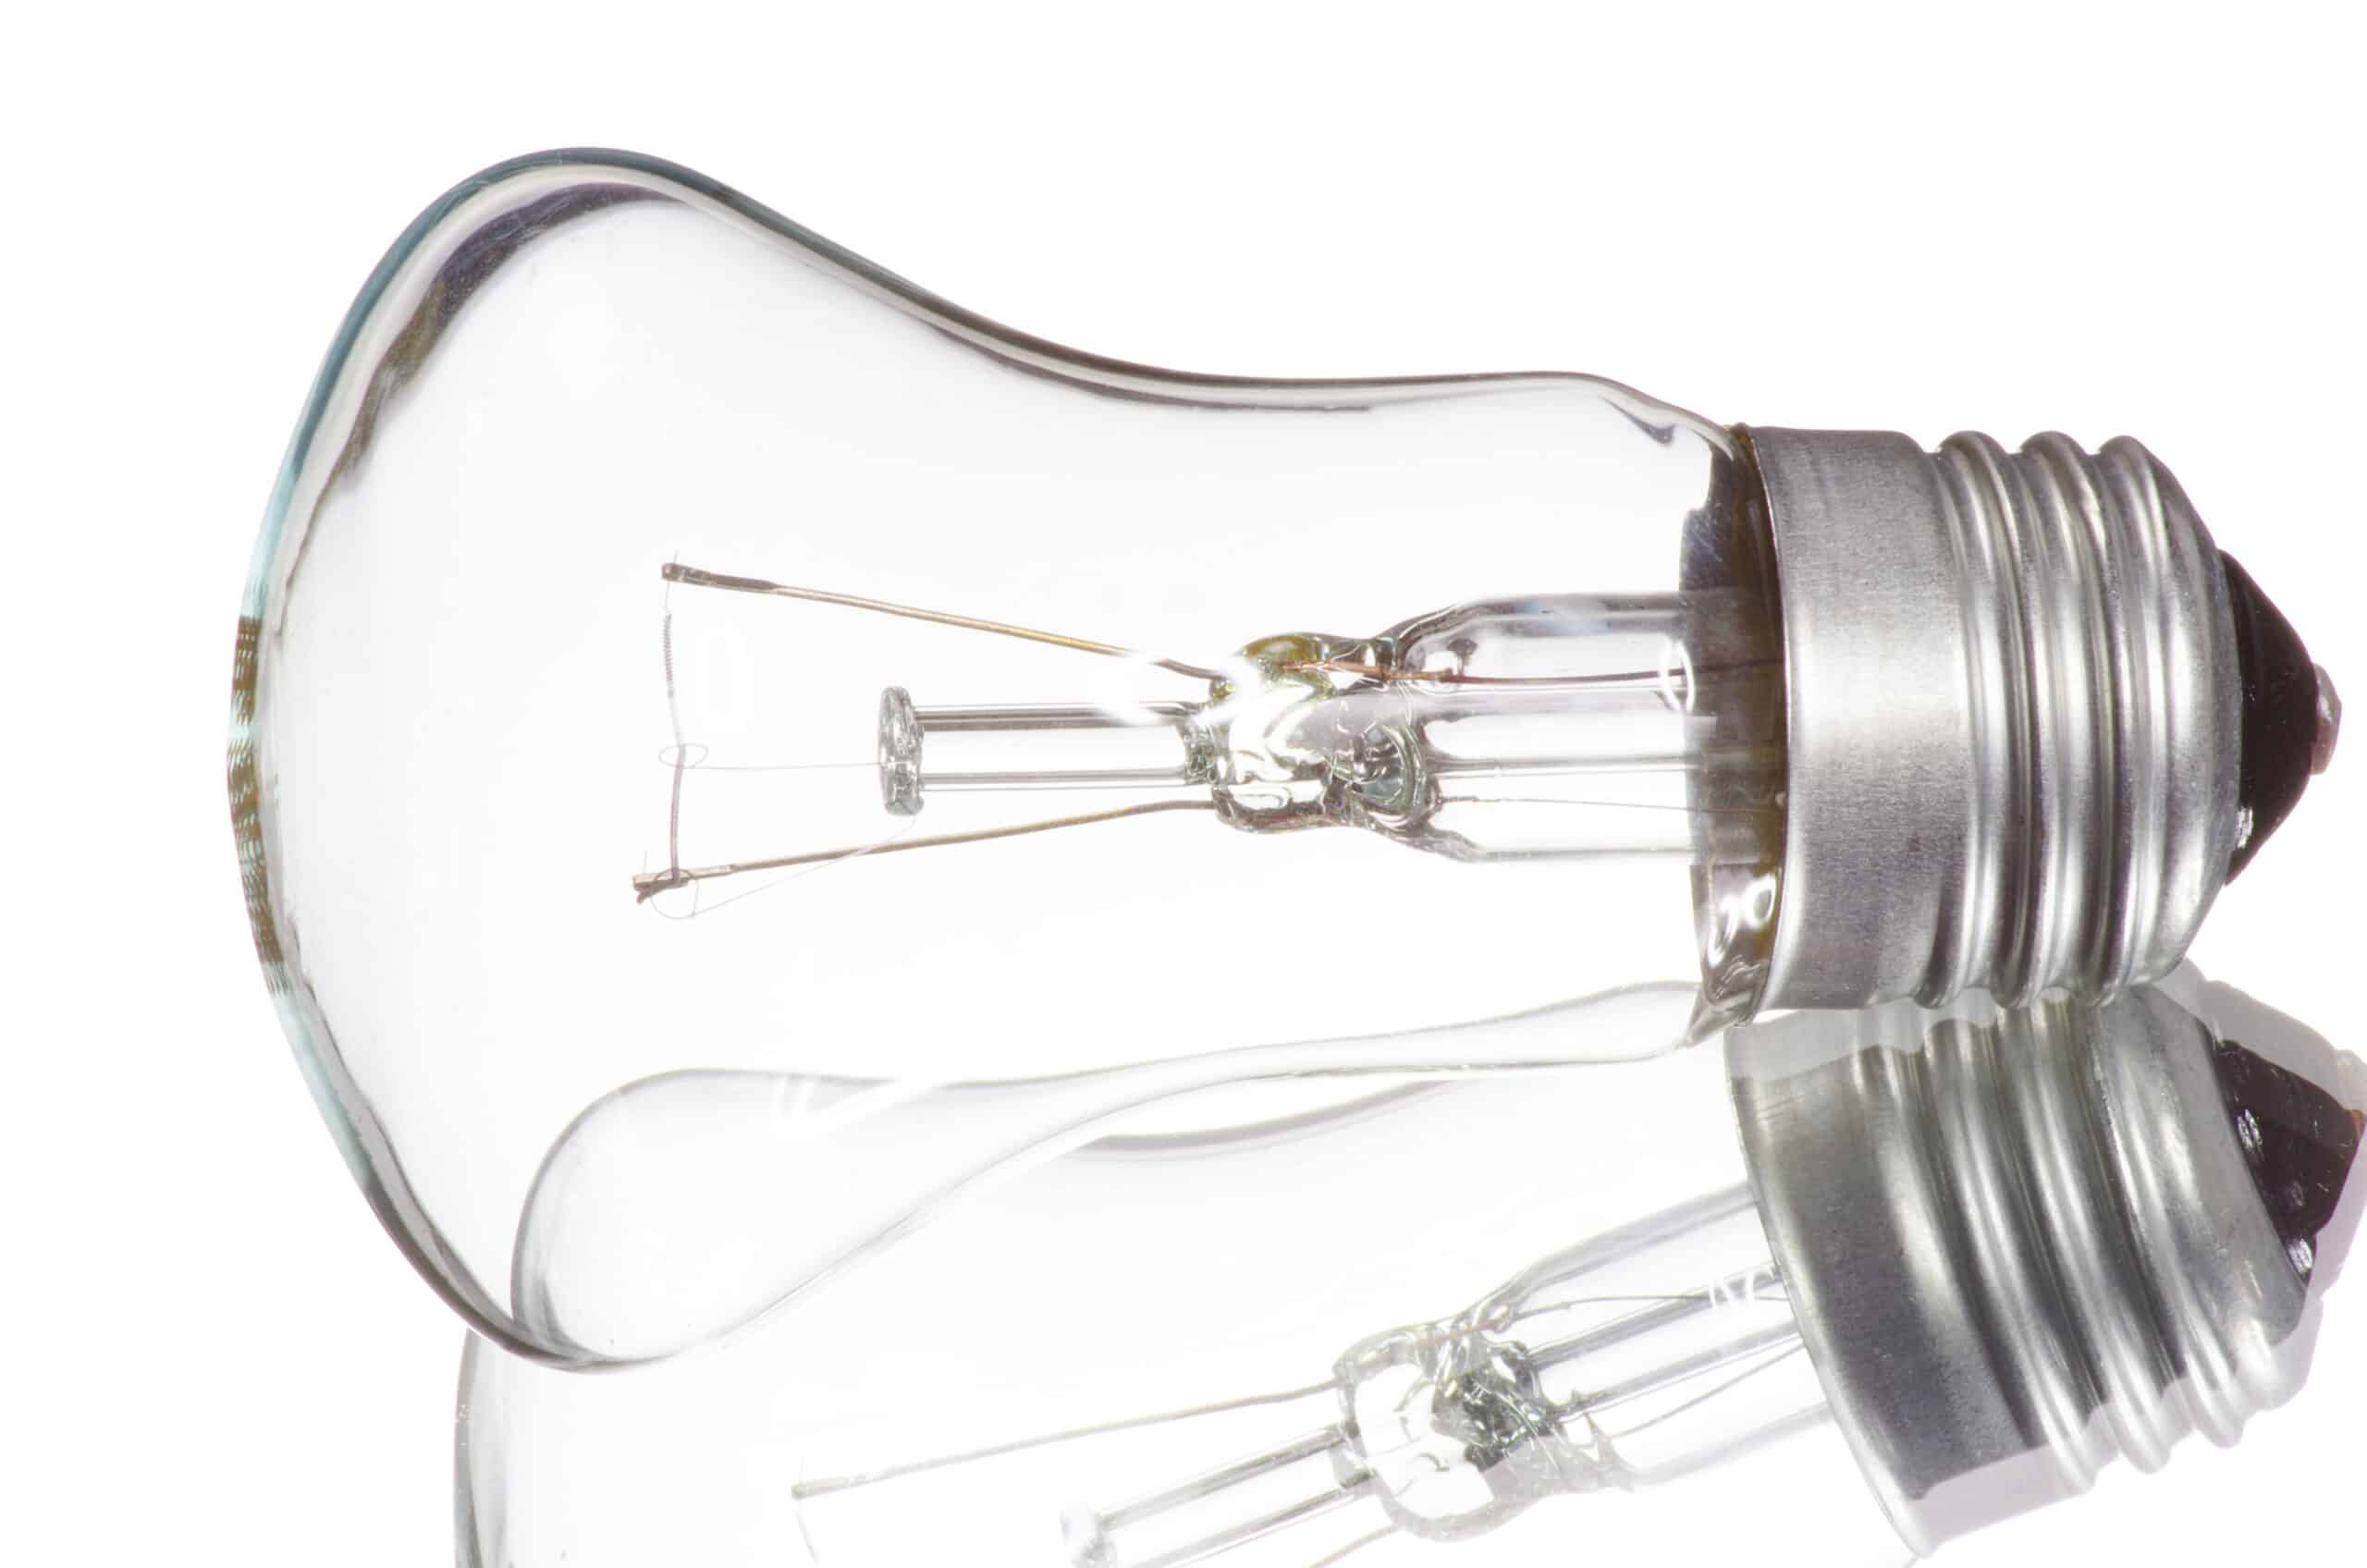 Ampoule basse consommation : Ce qu'il faut savoir [Article 2023]